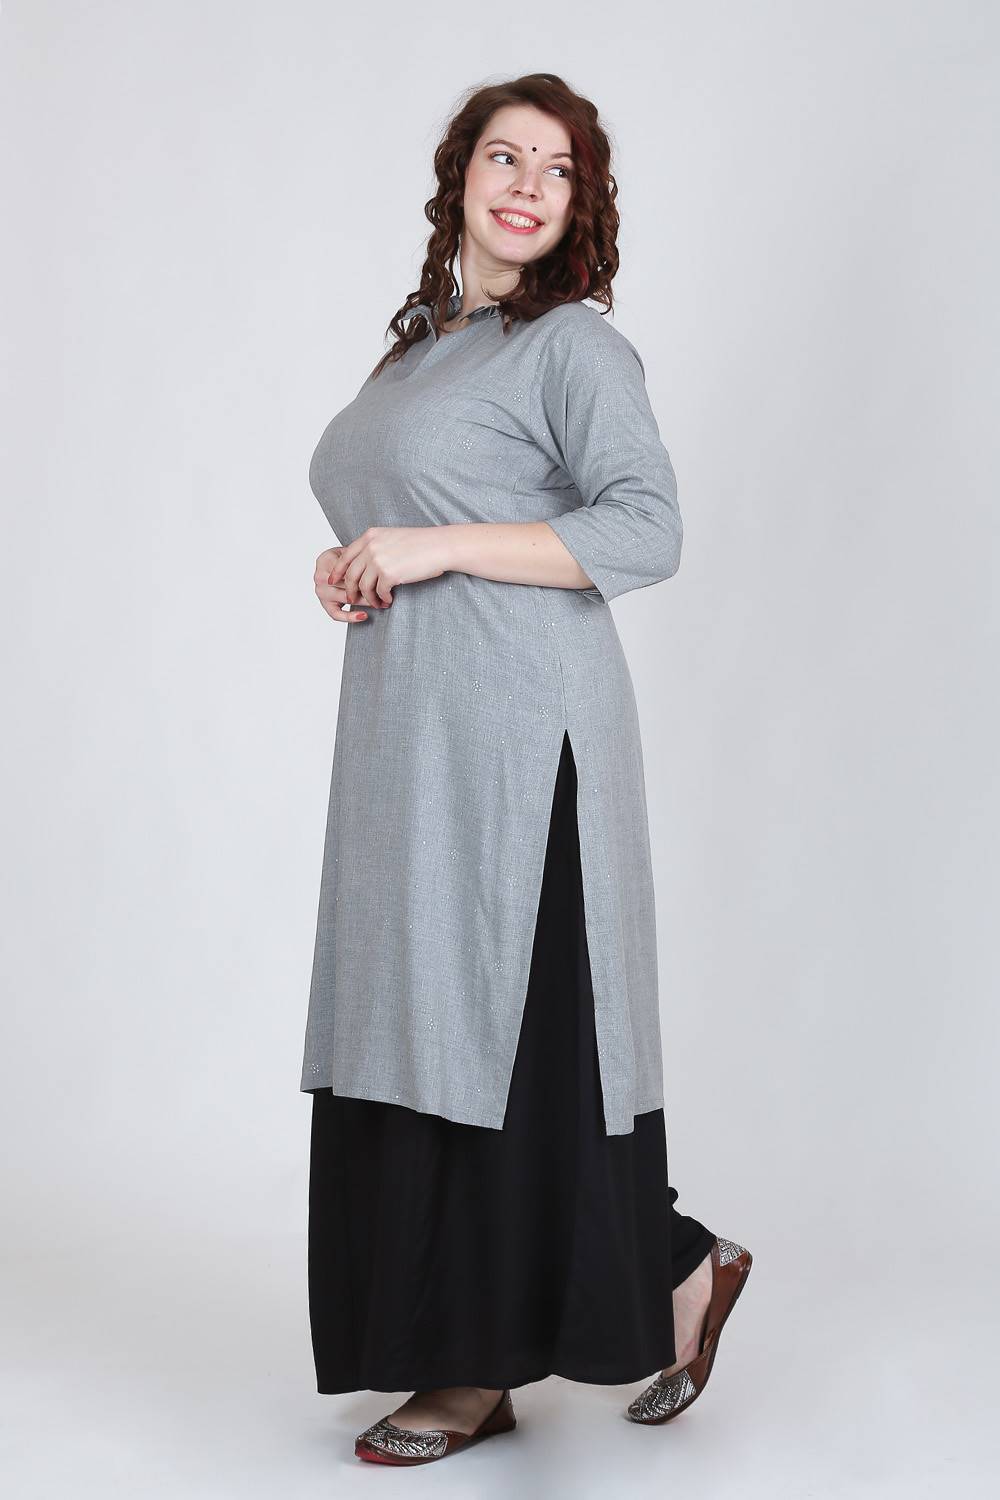 Ruffle Kurti, Size : M, S, XL, Pattern : Printed at Best Price in Shimoga |  Sagar Fashions